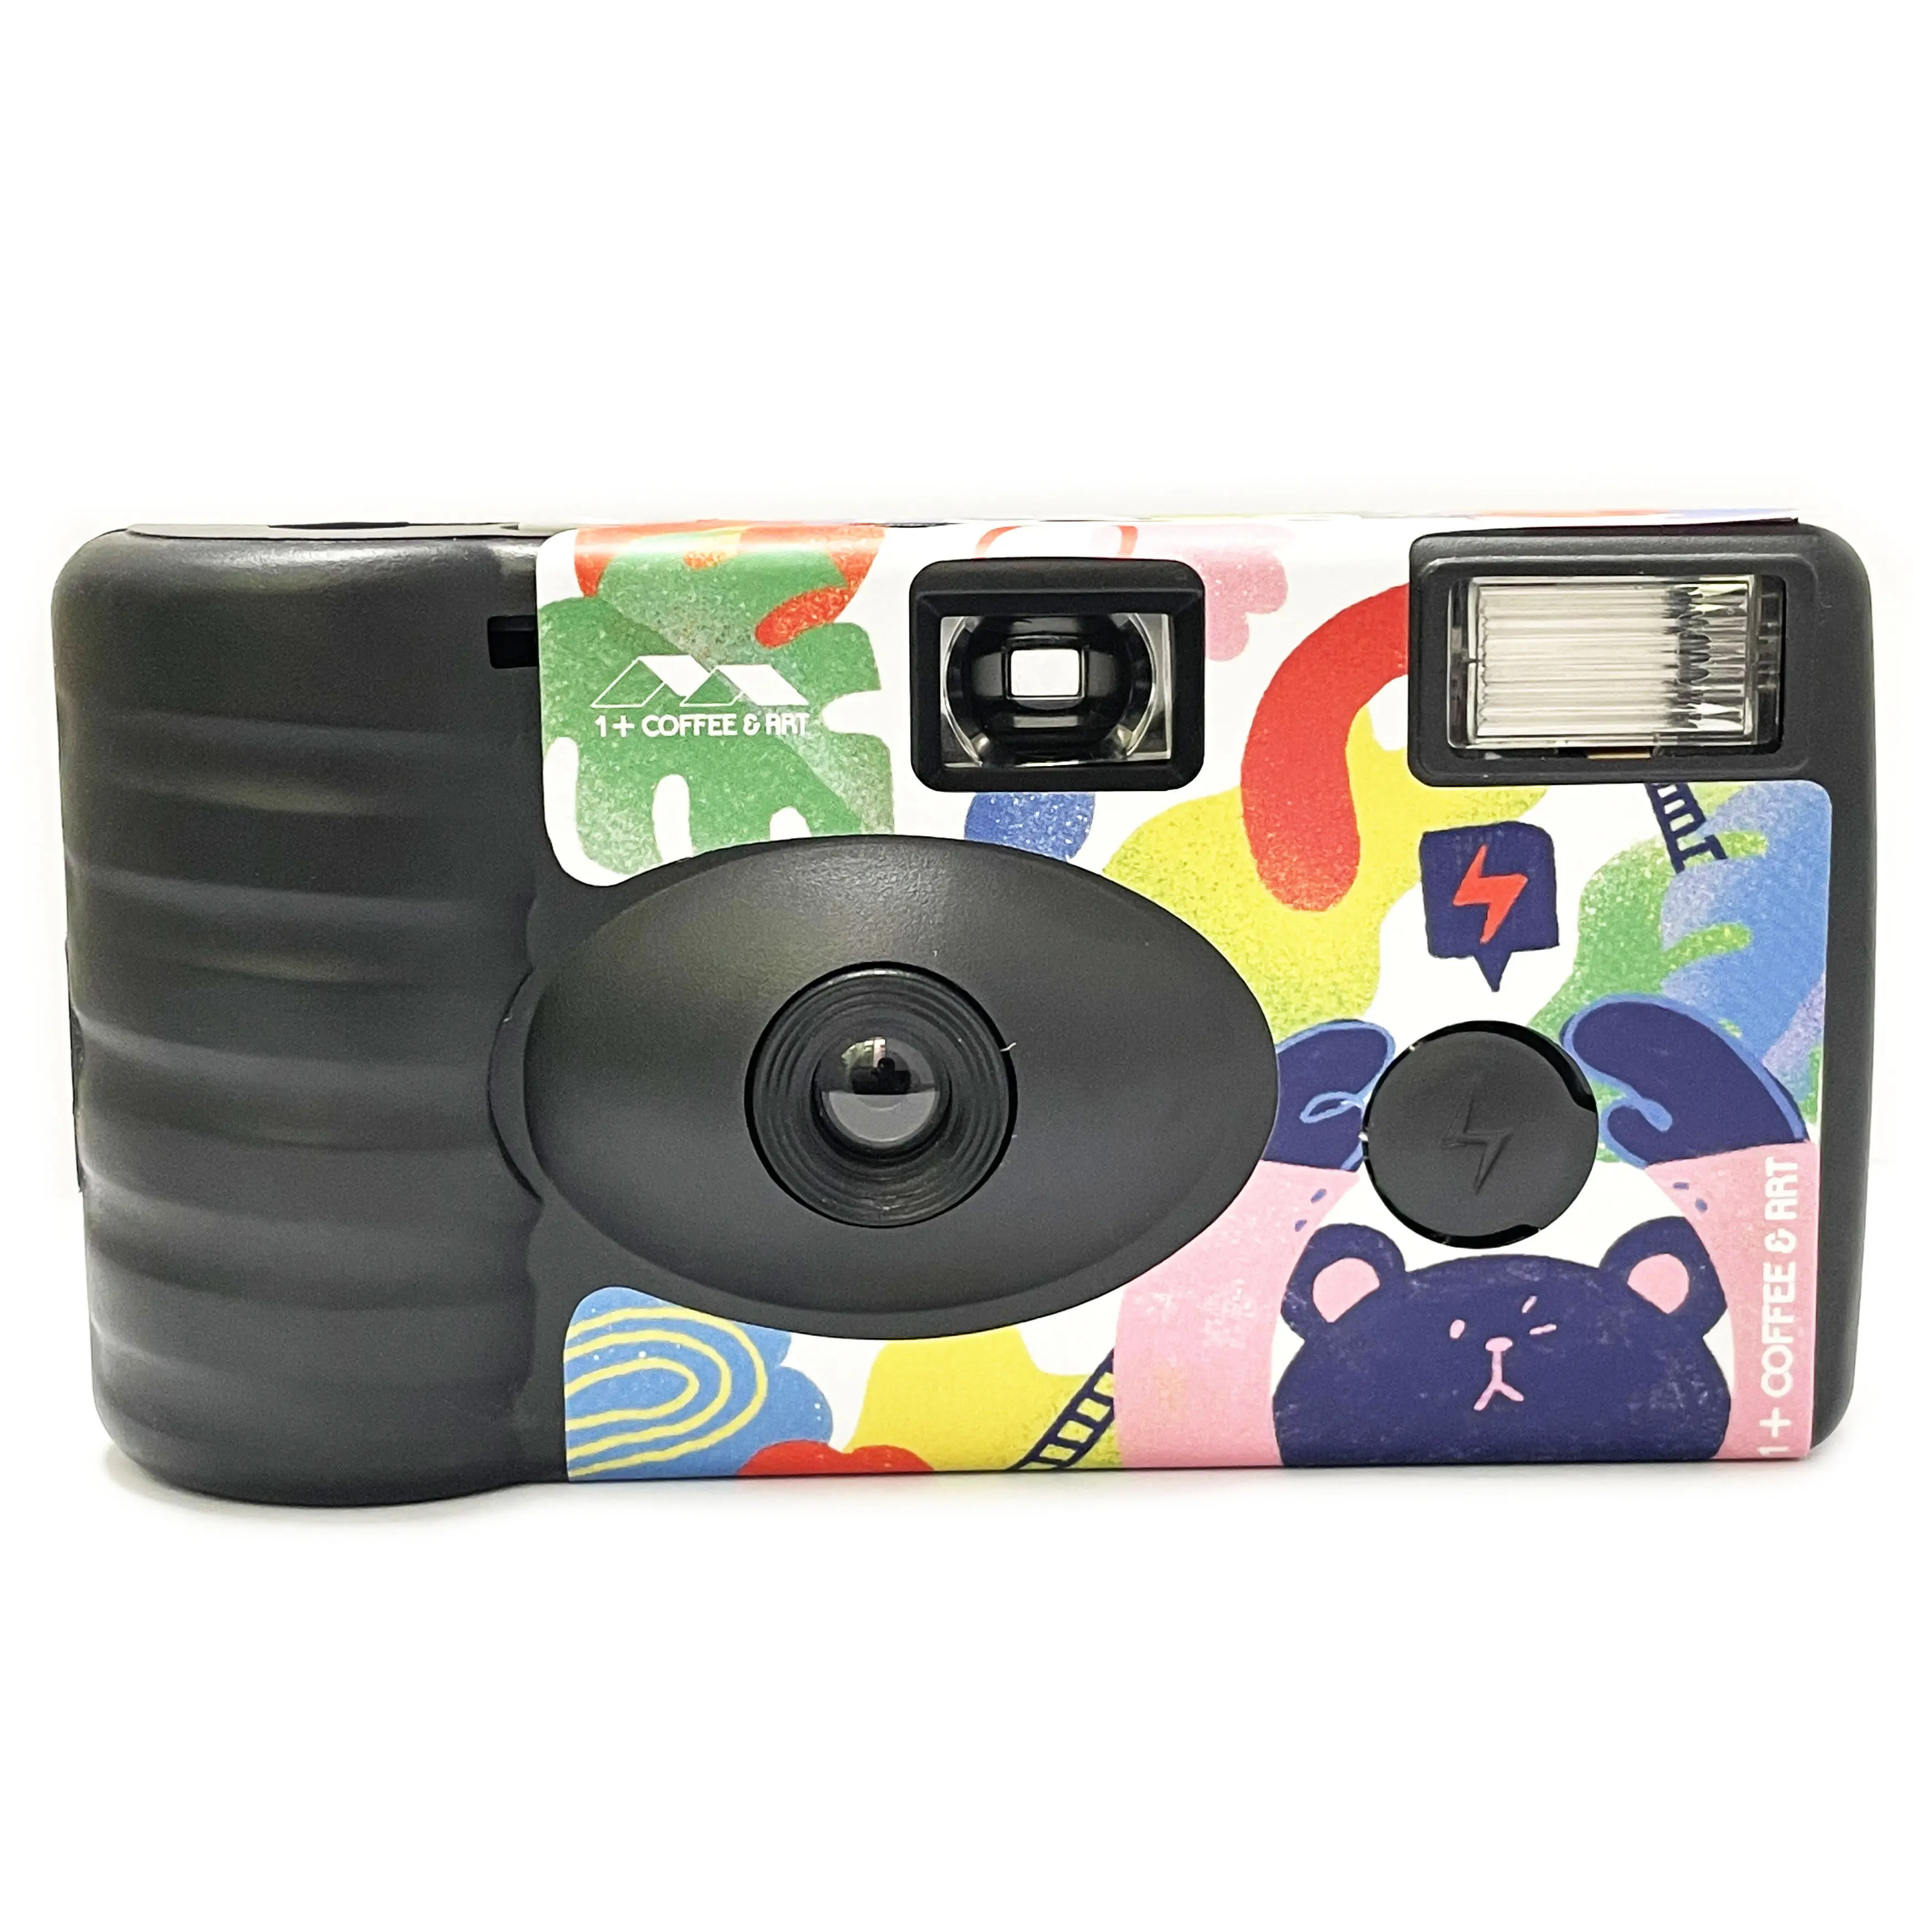 كاميرا حفلات مع فلاش, كاميرا قابلة لإعادة الاستعمال مزودة بـ 27 صورة بتصميم ثابت يمكن التخلص منه للاستخدام مرة واحدة